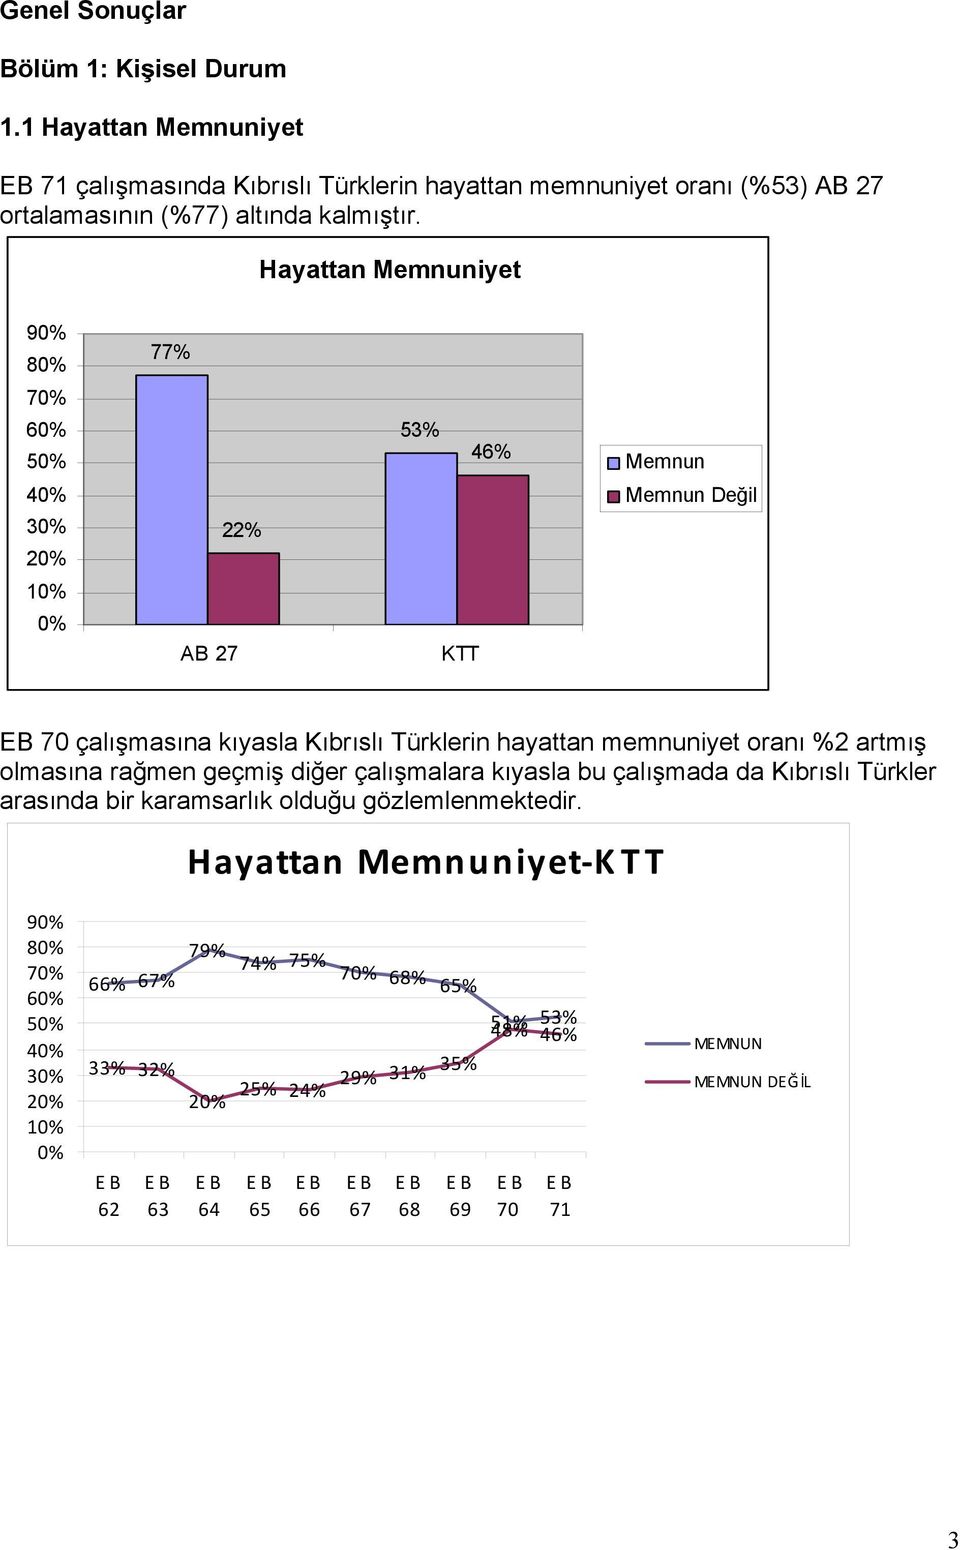 Hayattan Memnuniyet 9 8 77% 7 6 53% 46% Memnun 22% Memnun Değil EB 70 çalışmasına kıyasla Kıbrıslı Türklerin hayattan memnuniyet oranı %2 artmış olmasına